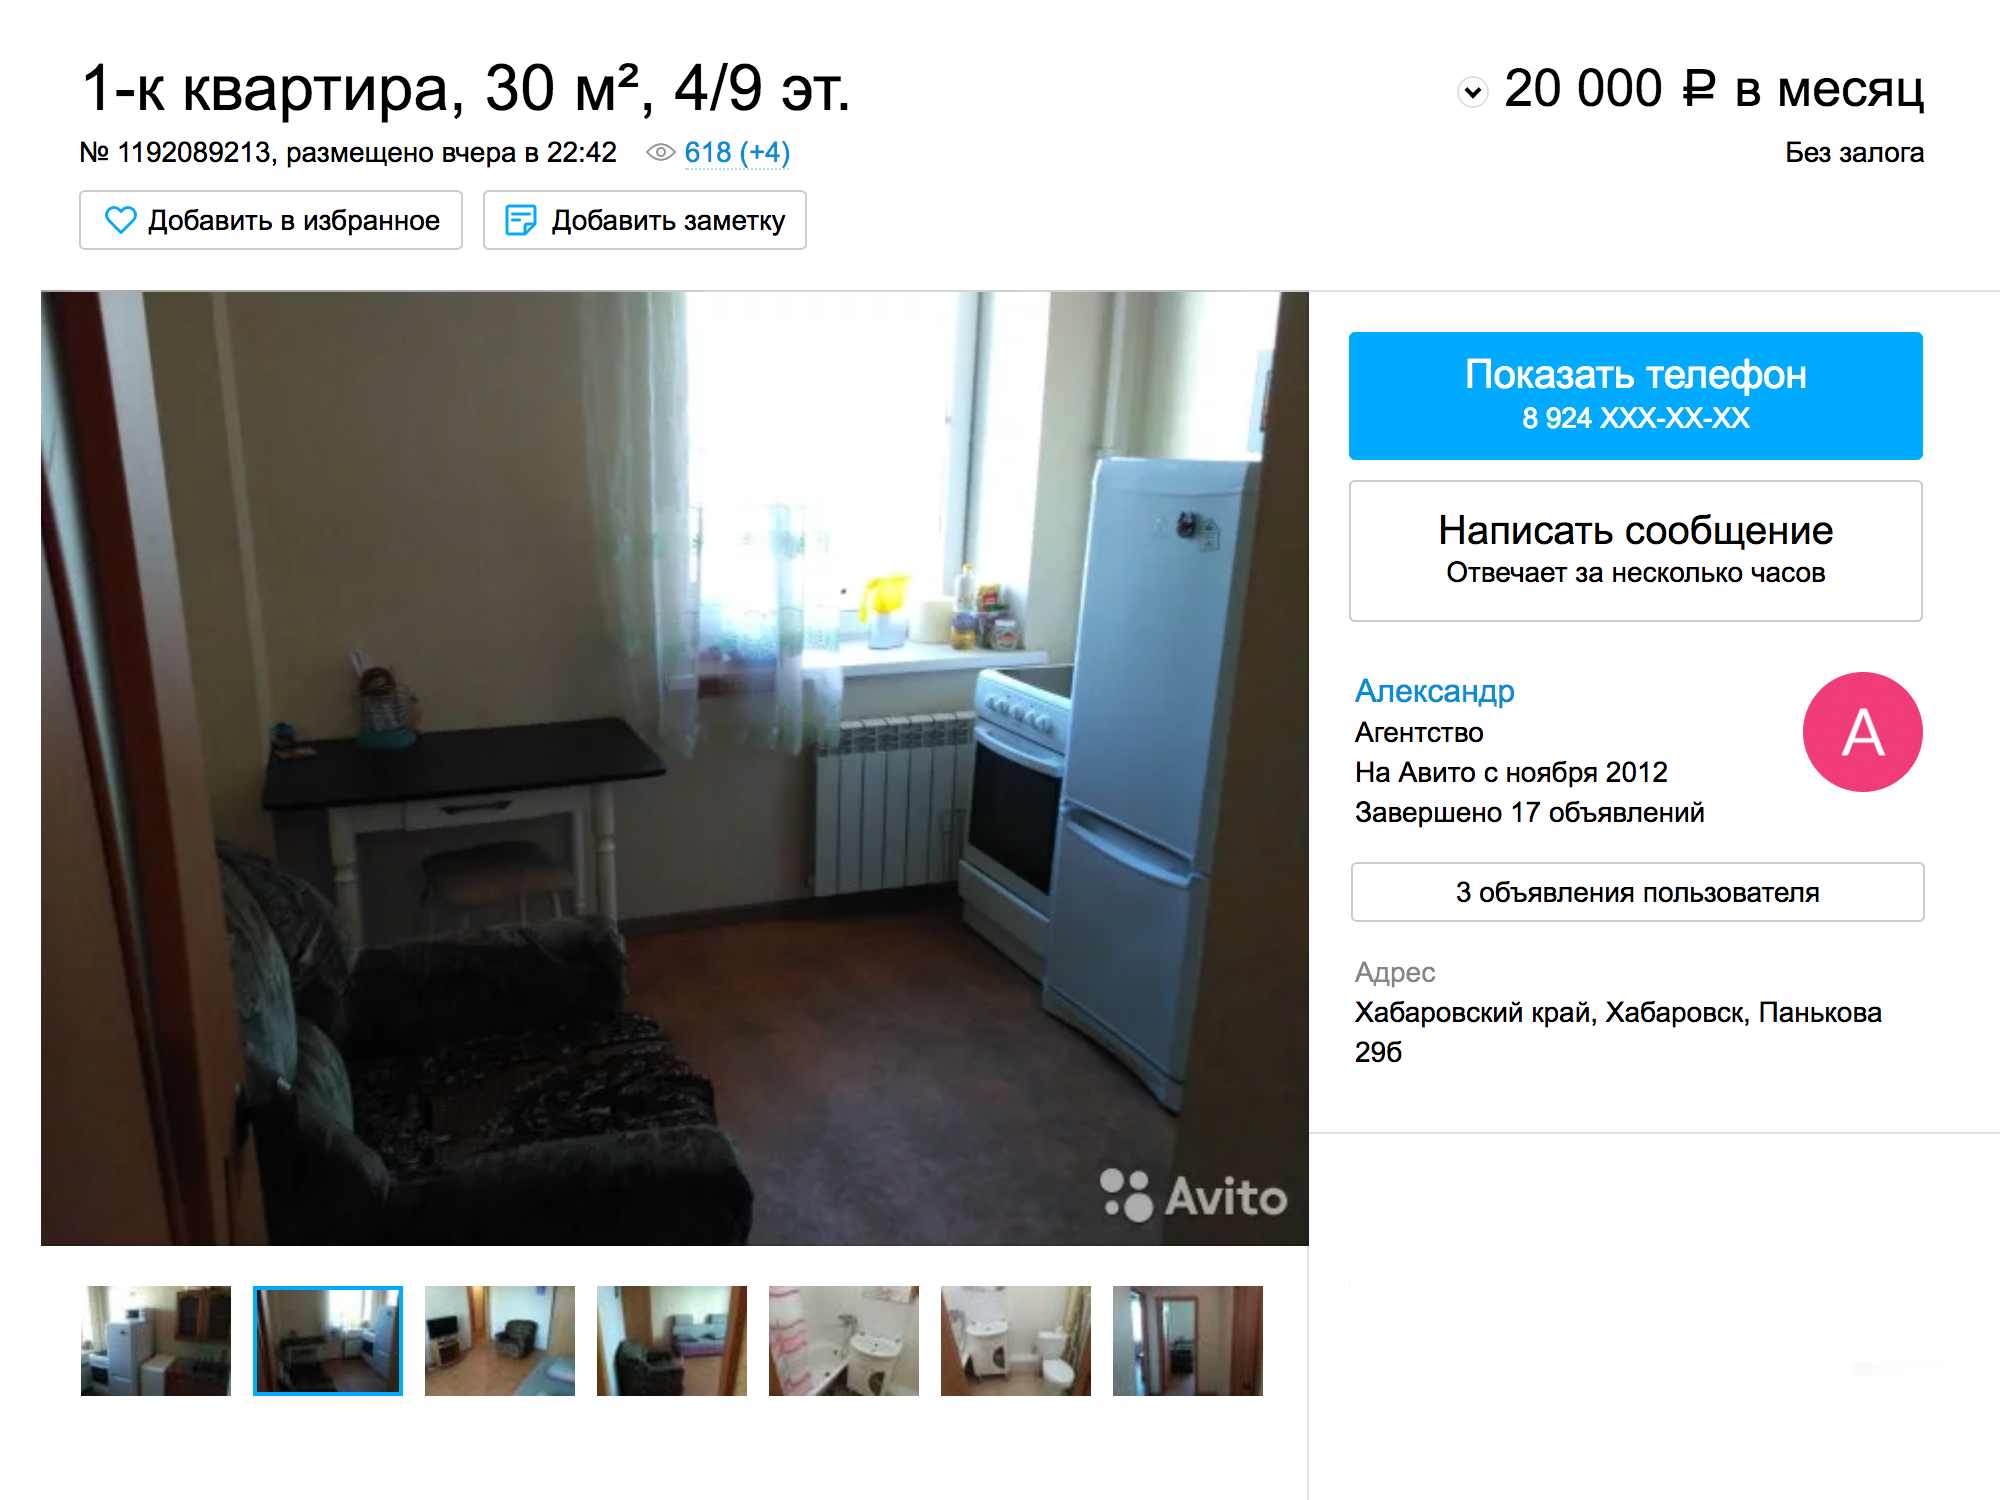 Более-менее приличную однокомнатную квартиру в центре города можно снять за 20 тысяч рублей